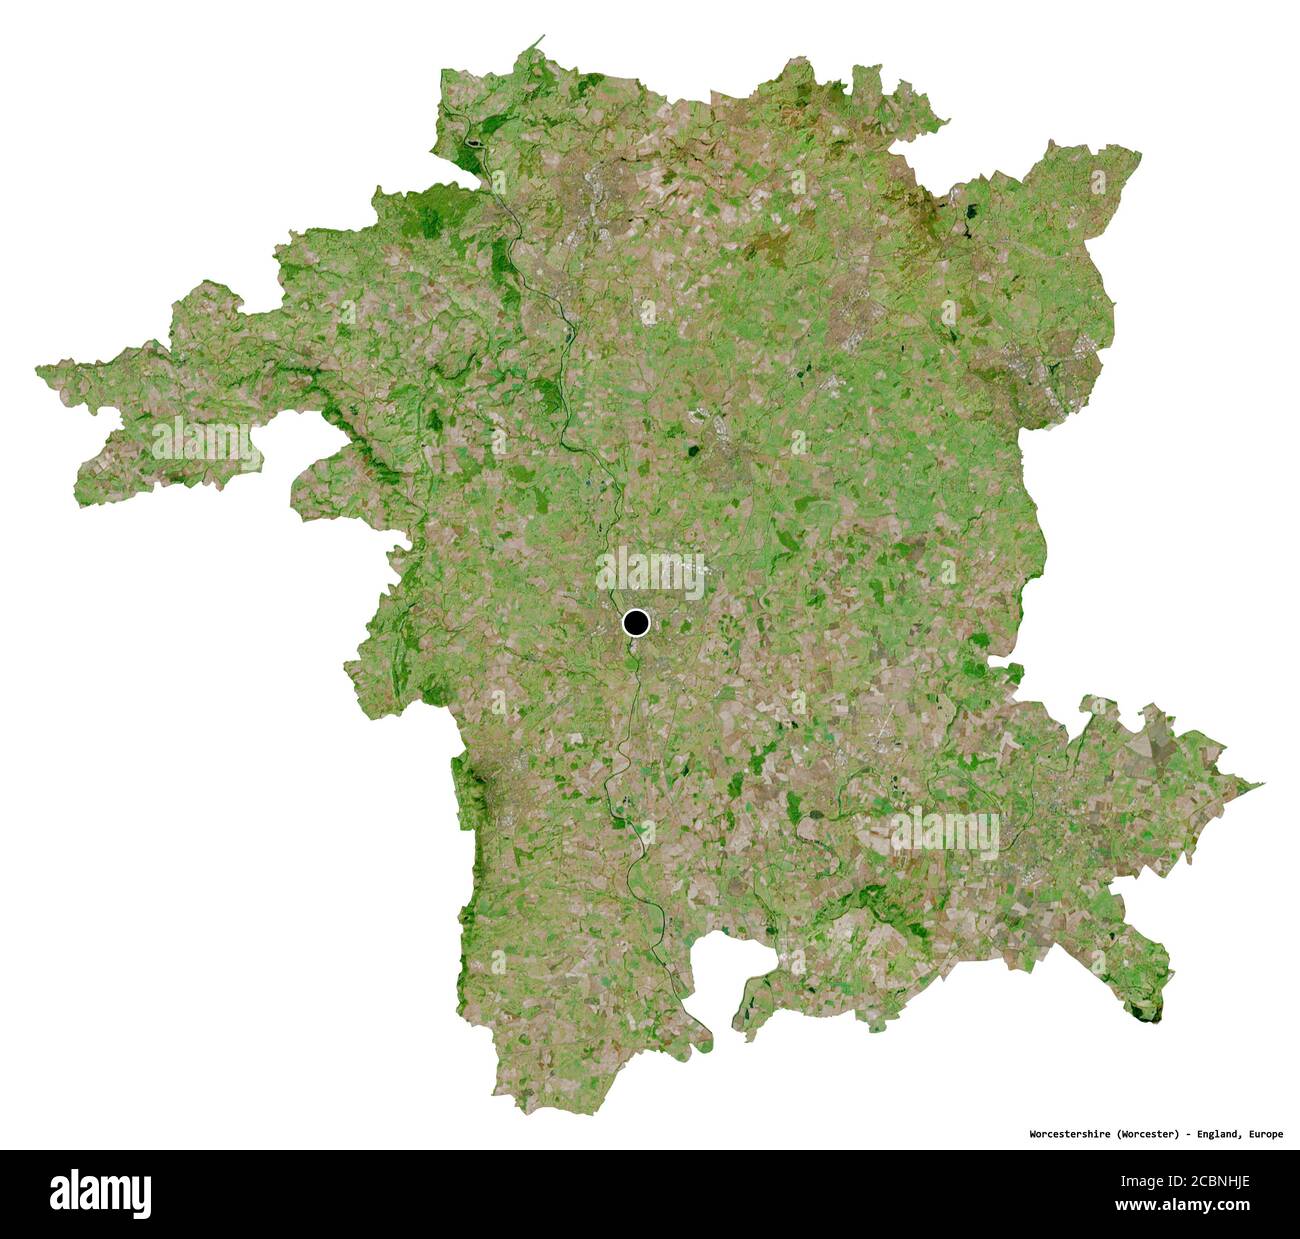 Forme de Worcestershire, comté administratif d'Angleterre, avec sa capitale isolée sur fond blanc. Imagerie satellite. Rendu 3D Banque D'Images